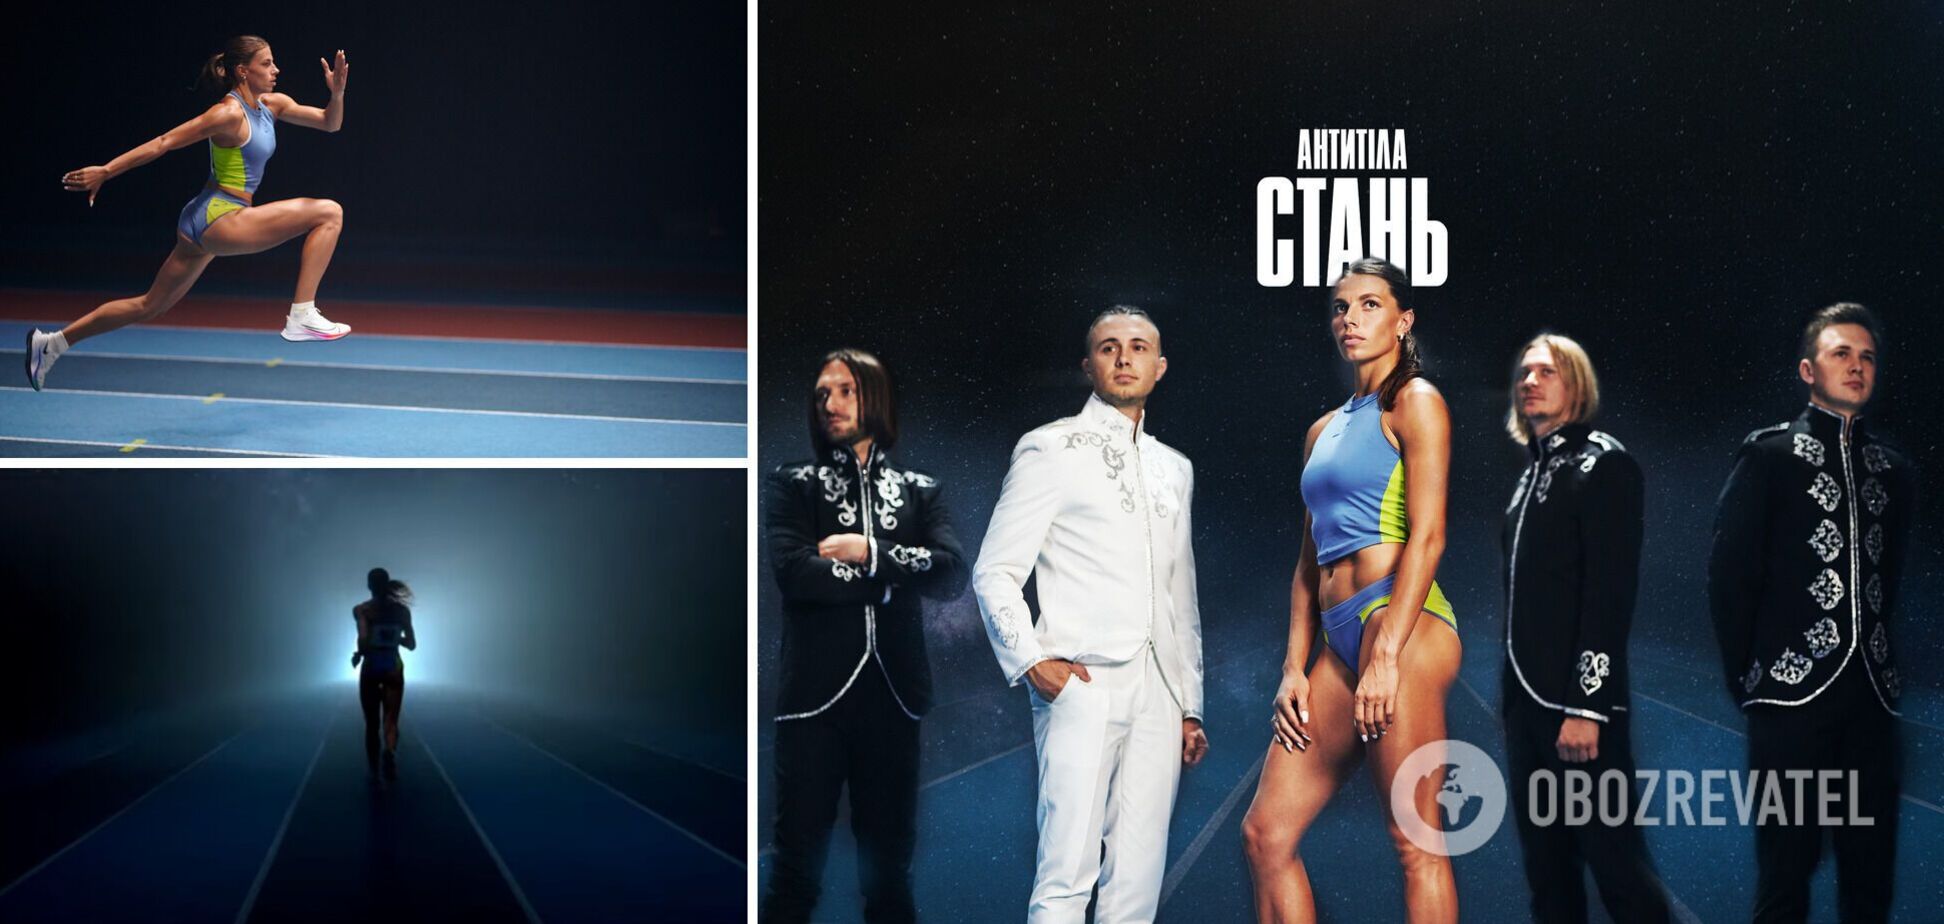 'Антитела' представили новый клип на песню 'Стань' с чемпионкой Украины. Видео